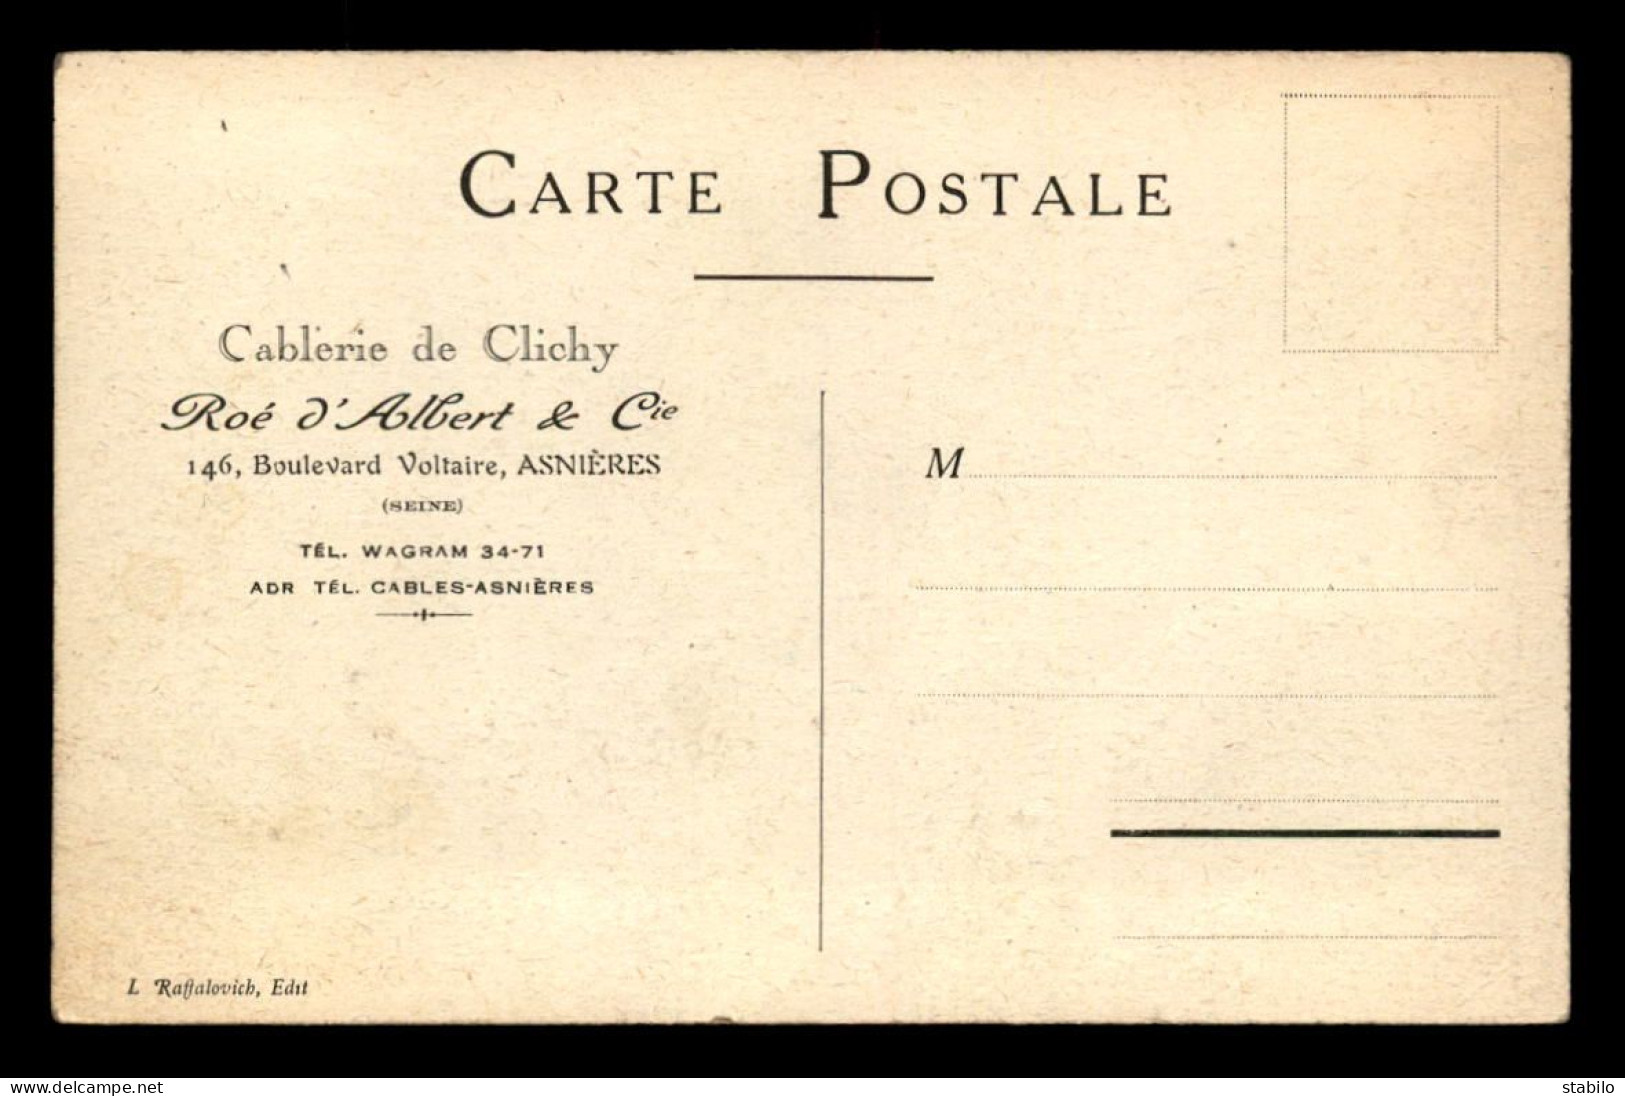 92 - ASNIERES - CABLERIE DE CLICHY, ROE D'ALBERT & CIE, 146 BLD VOLTAIRE - CARTE ILLUSTREE - Asnieres Sur Seine